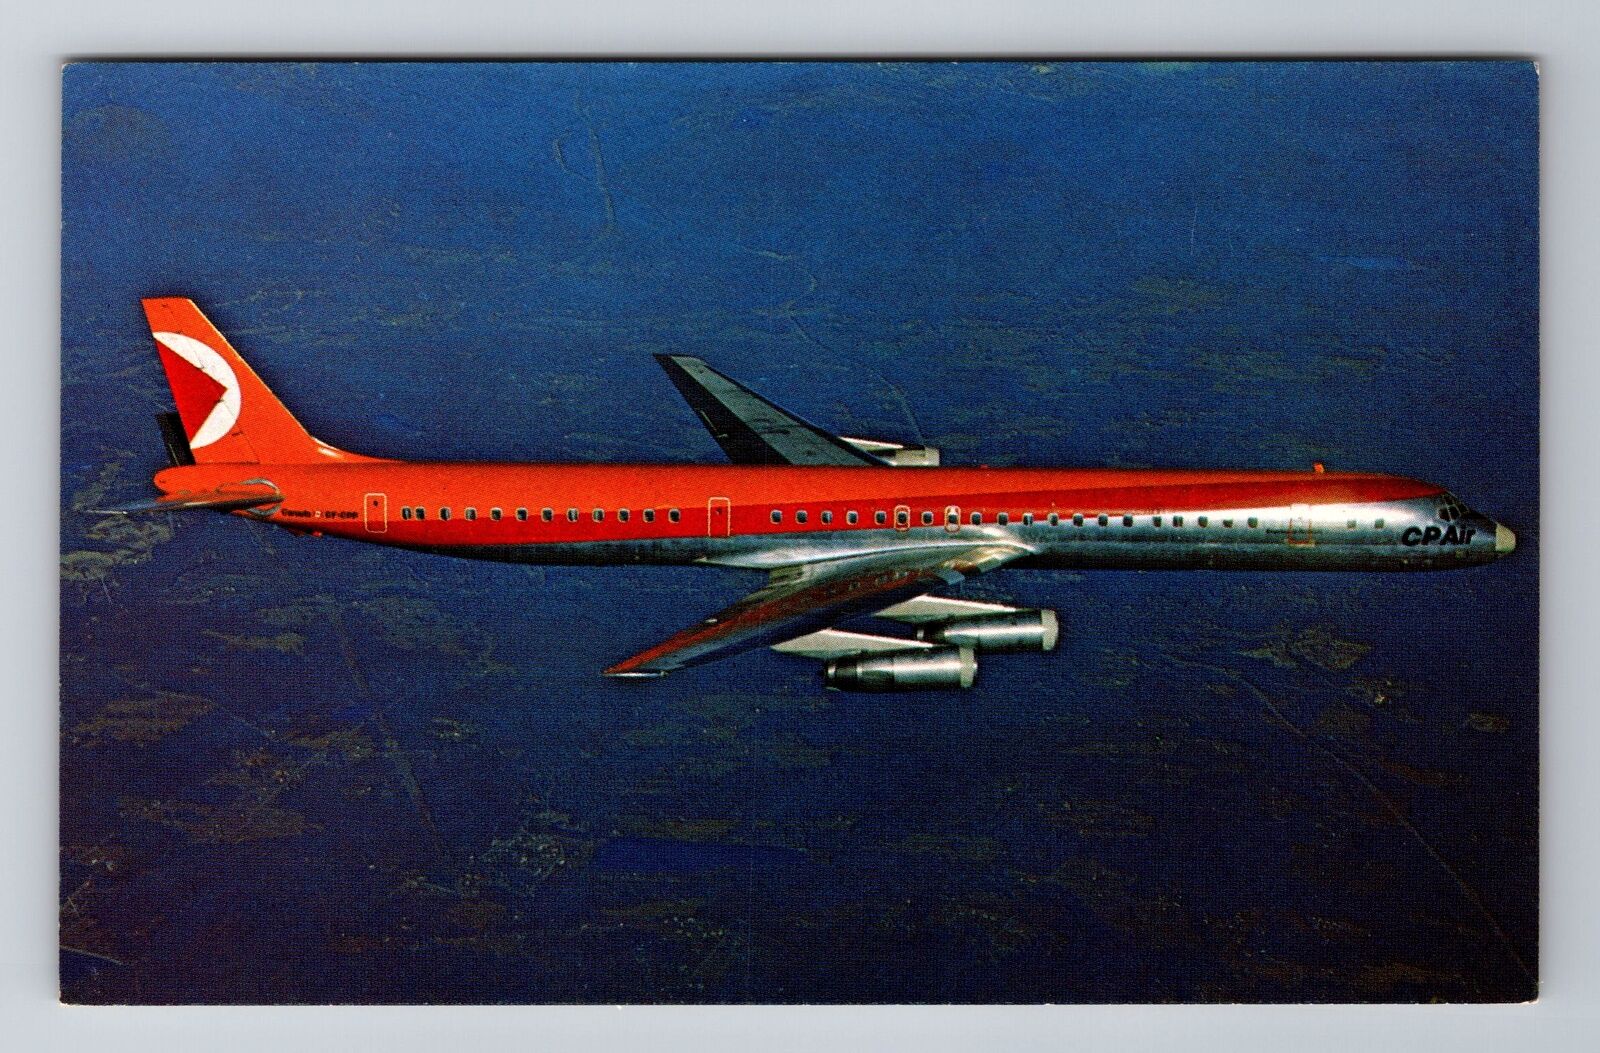 CP Air DC-8 Aircraft, Plane, Transportation, Antique Vintage Souvenir Postcard